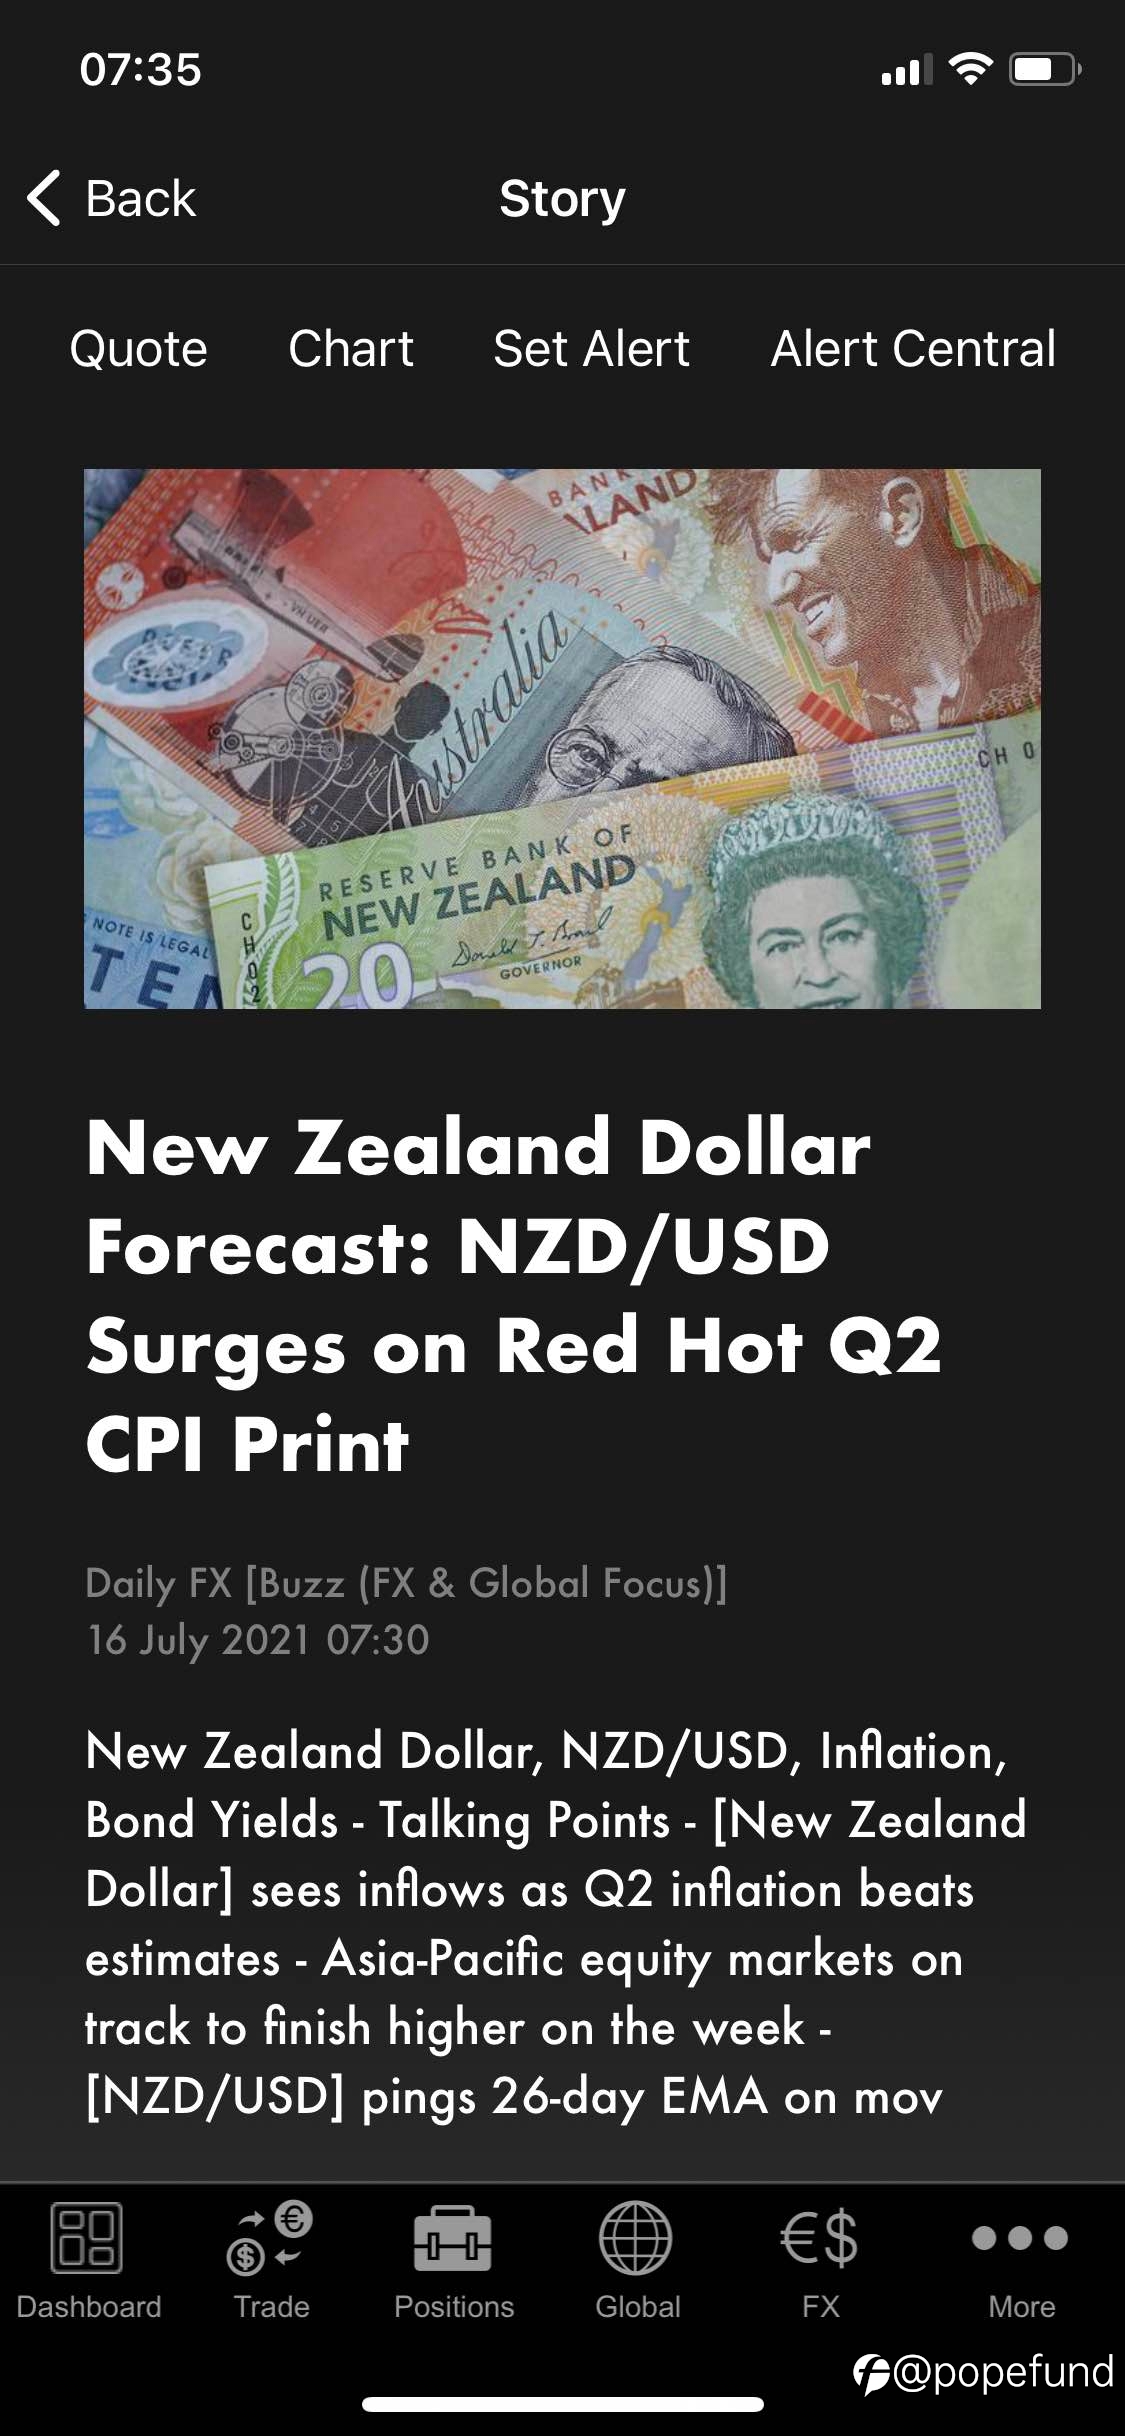 知行合一：Morning Shots, Pre-NZ CPI Speculation，very confident & rational bets on solid proofs & analysis.